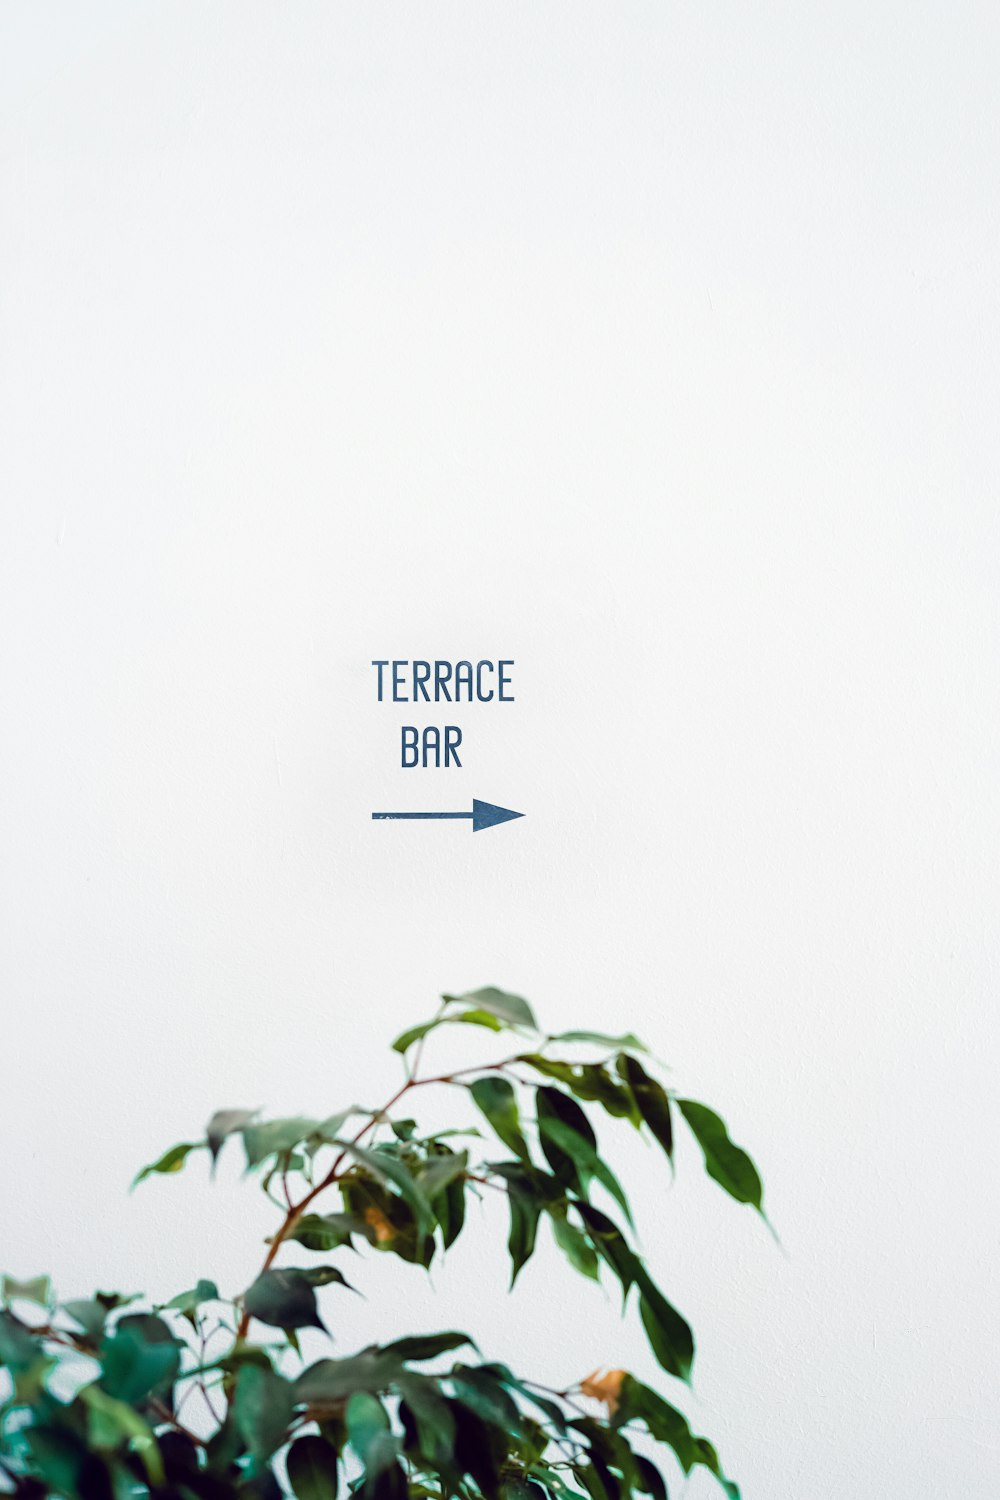 Texto de Terrace Bar